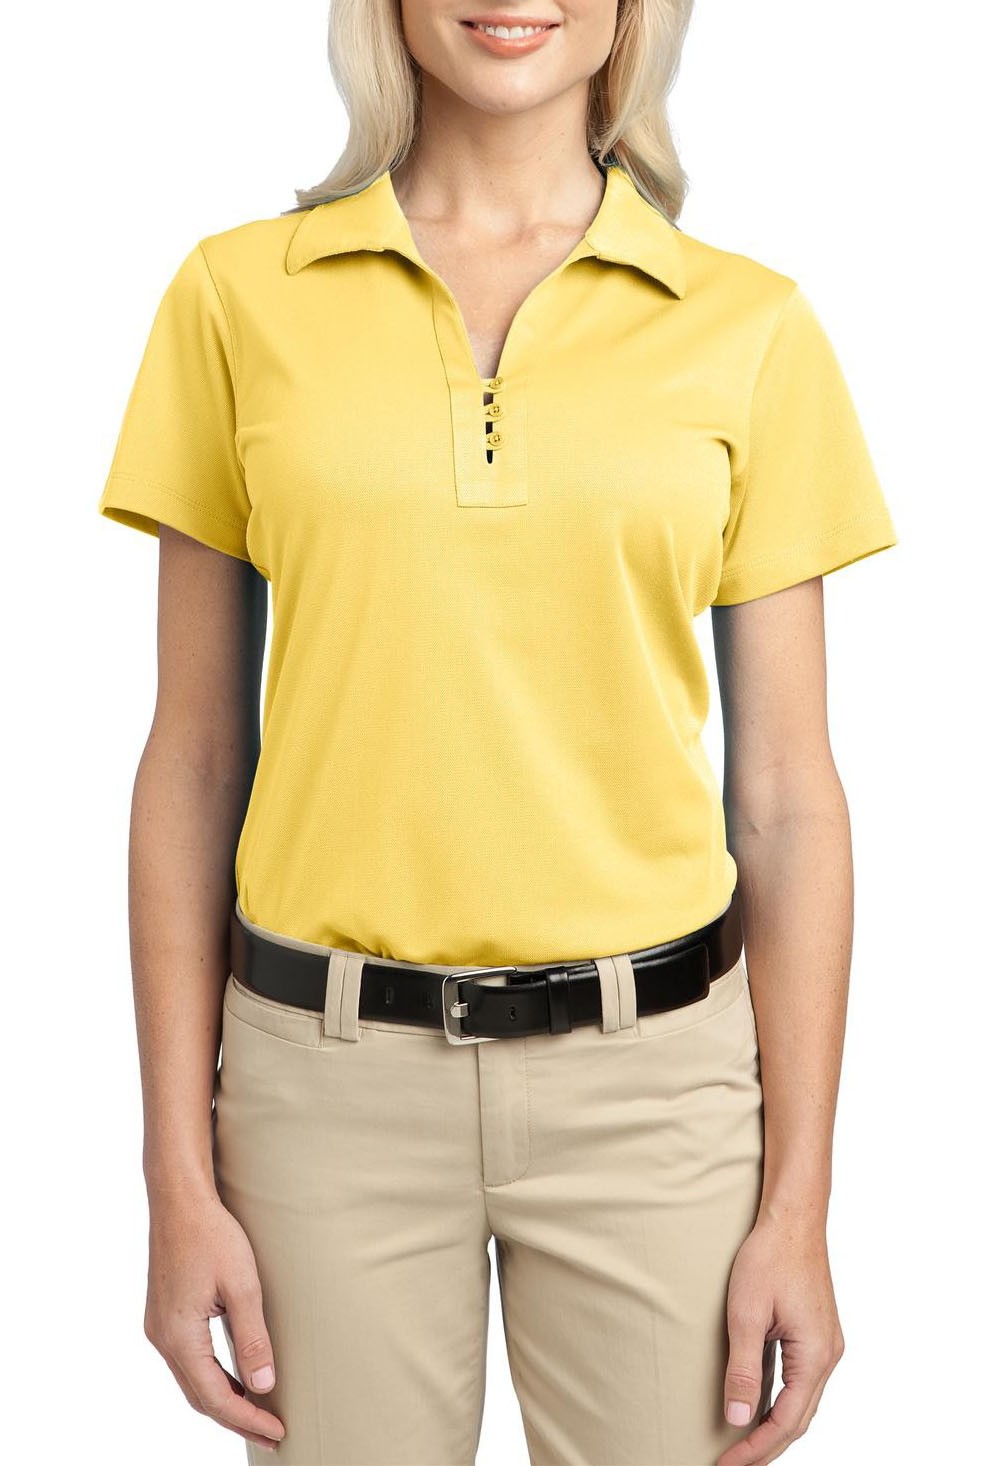 Port Authority® Blusa polo para dama con protección UV, ideal para uniforme. L527 amarillo